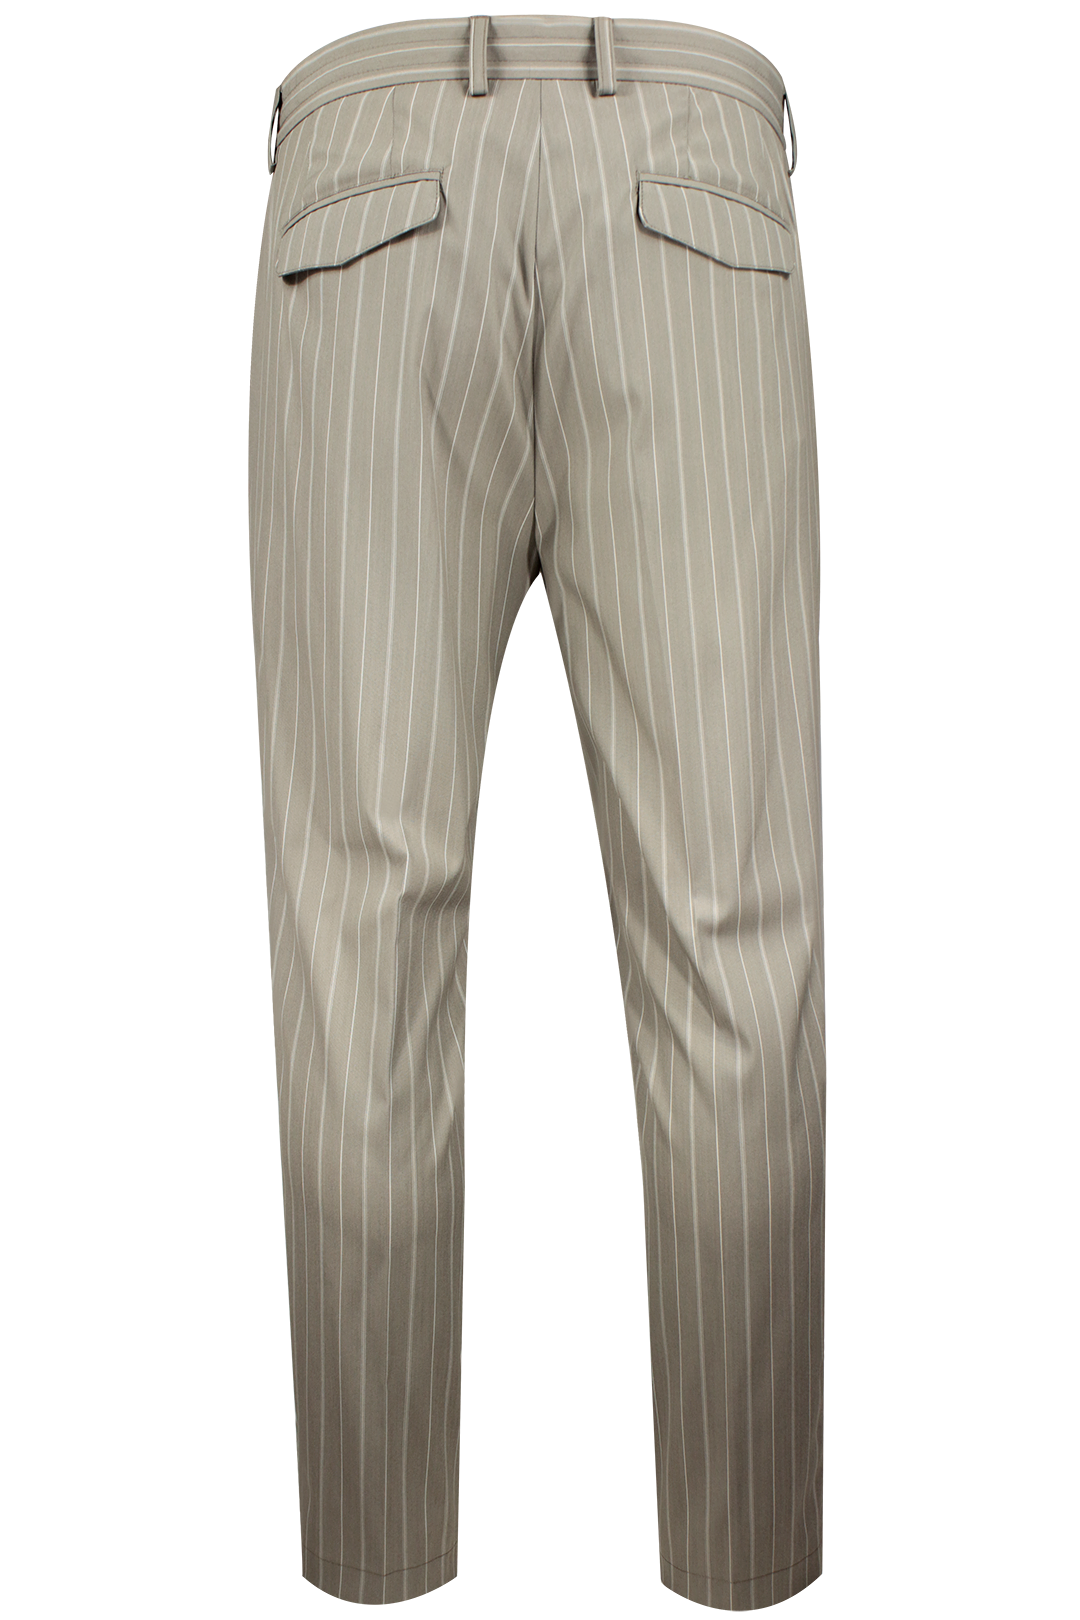 Pantalone con pince e coulisse in lana gessata grigio tortora retro